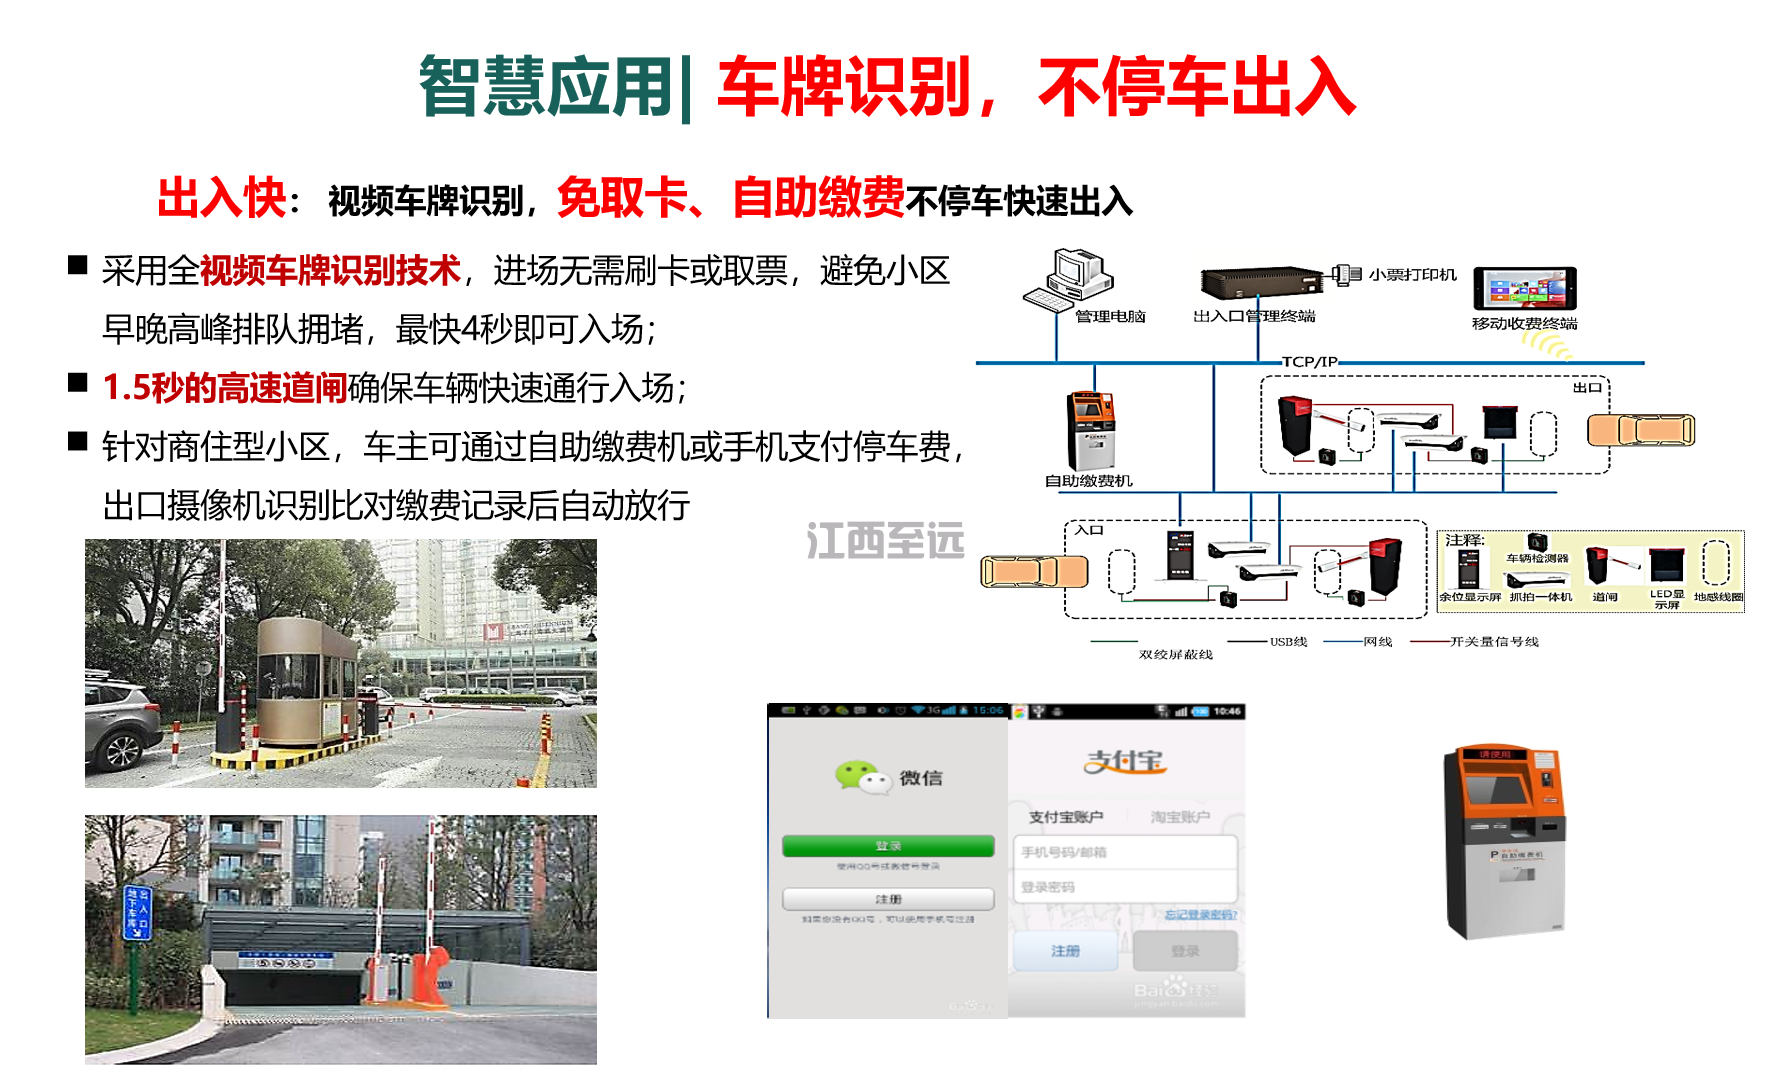 江西至遠-智慧社區/小(xiǎo)區建設解決方案(圖9)